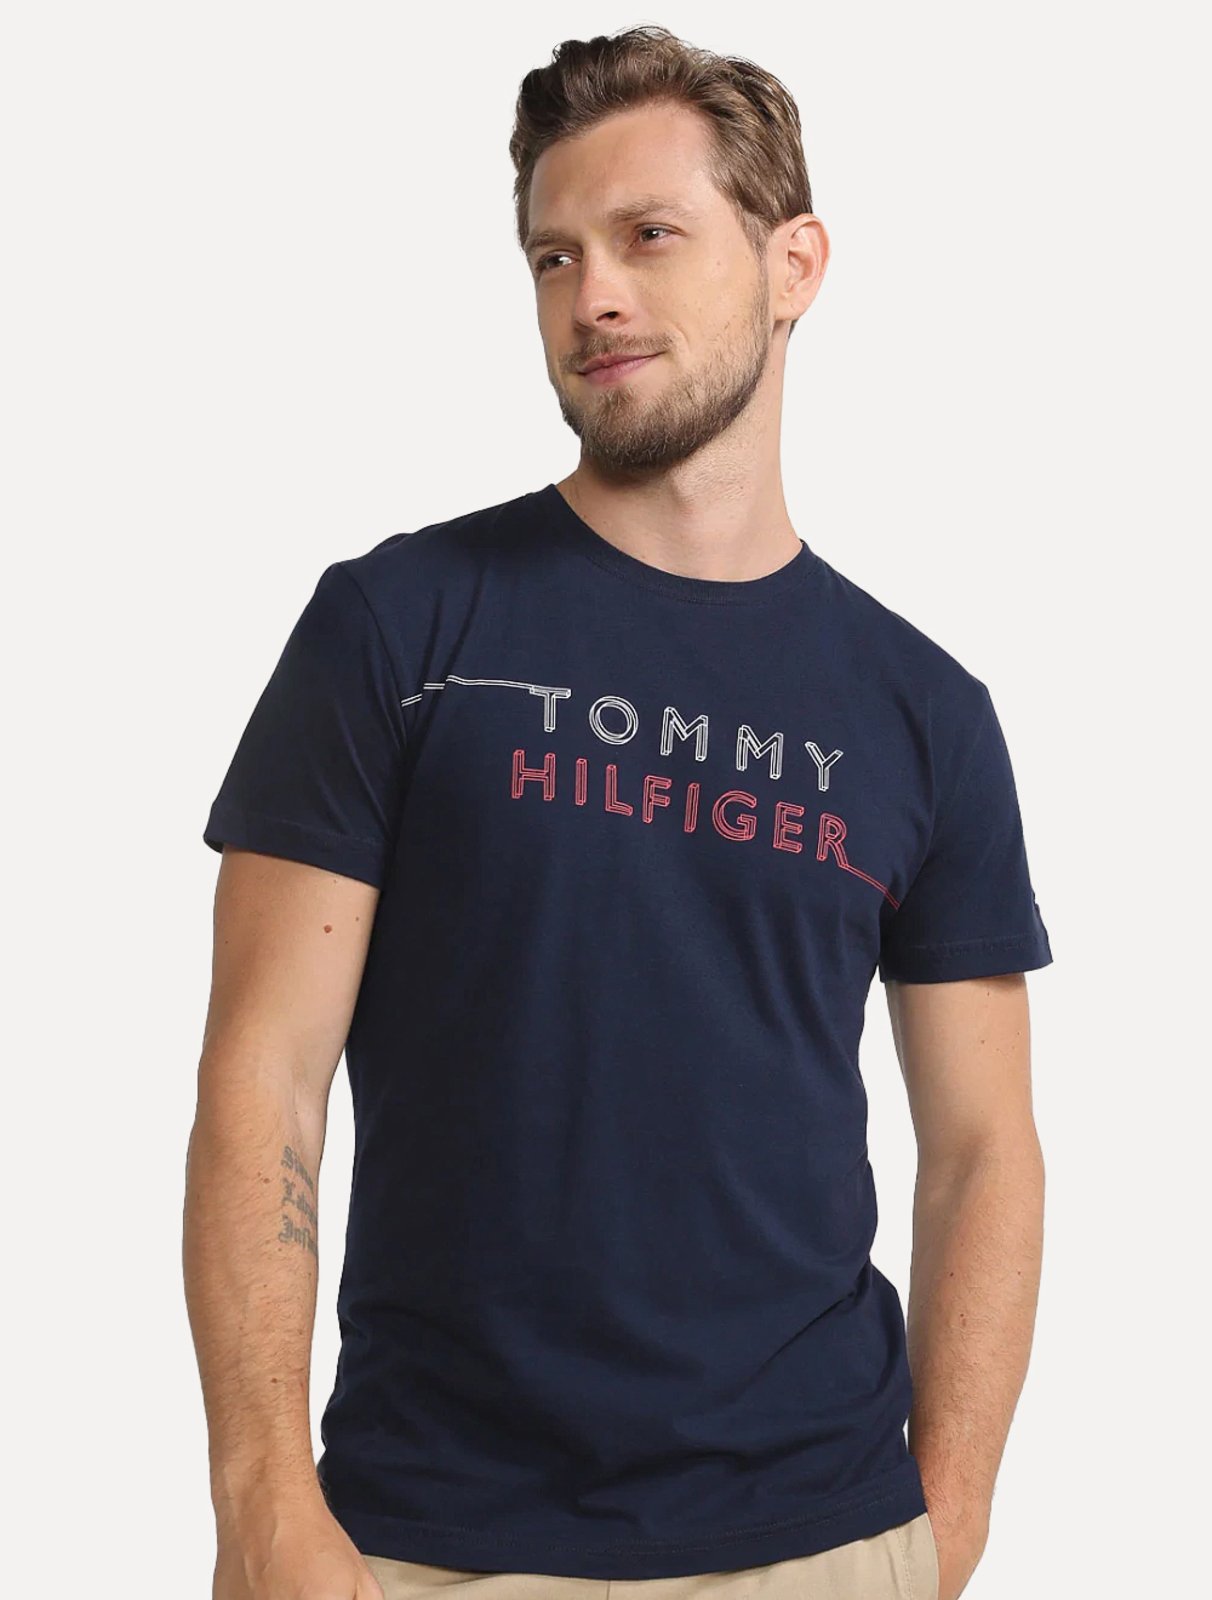 Camiseta Tommy Hilfiger Masculina Regular Fit Em Algodão Egípcio New York  City Azul Marinho